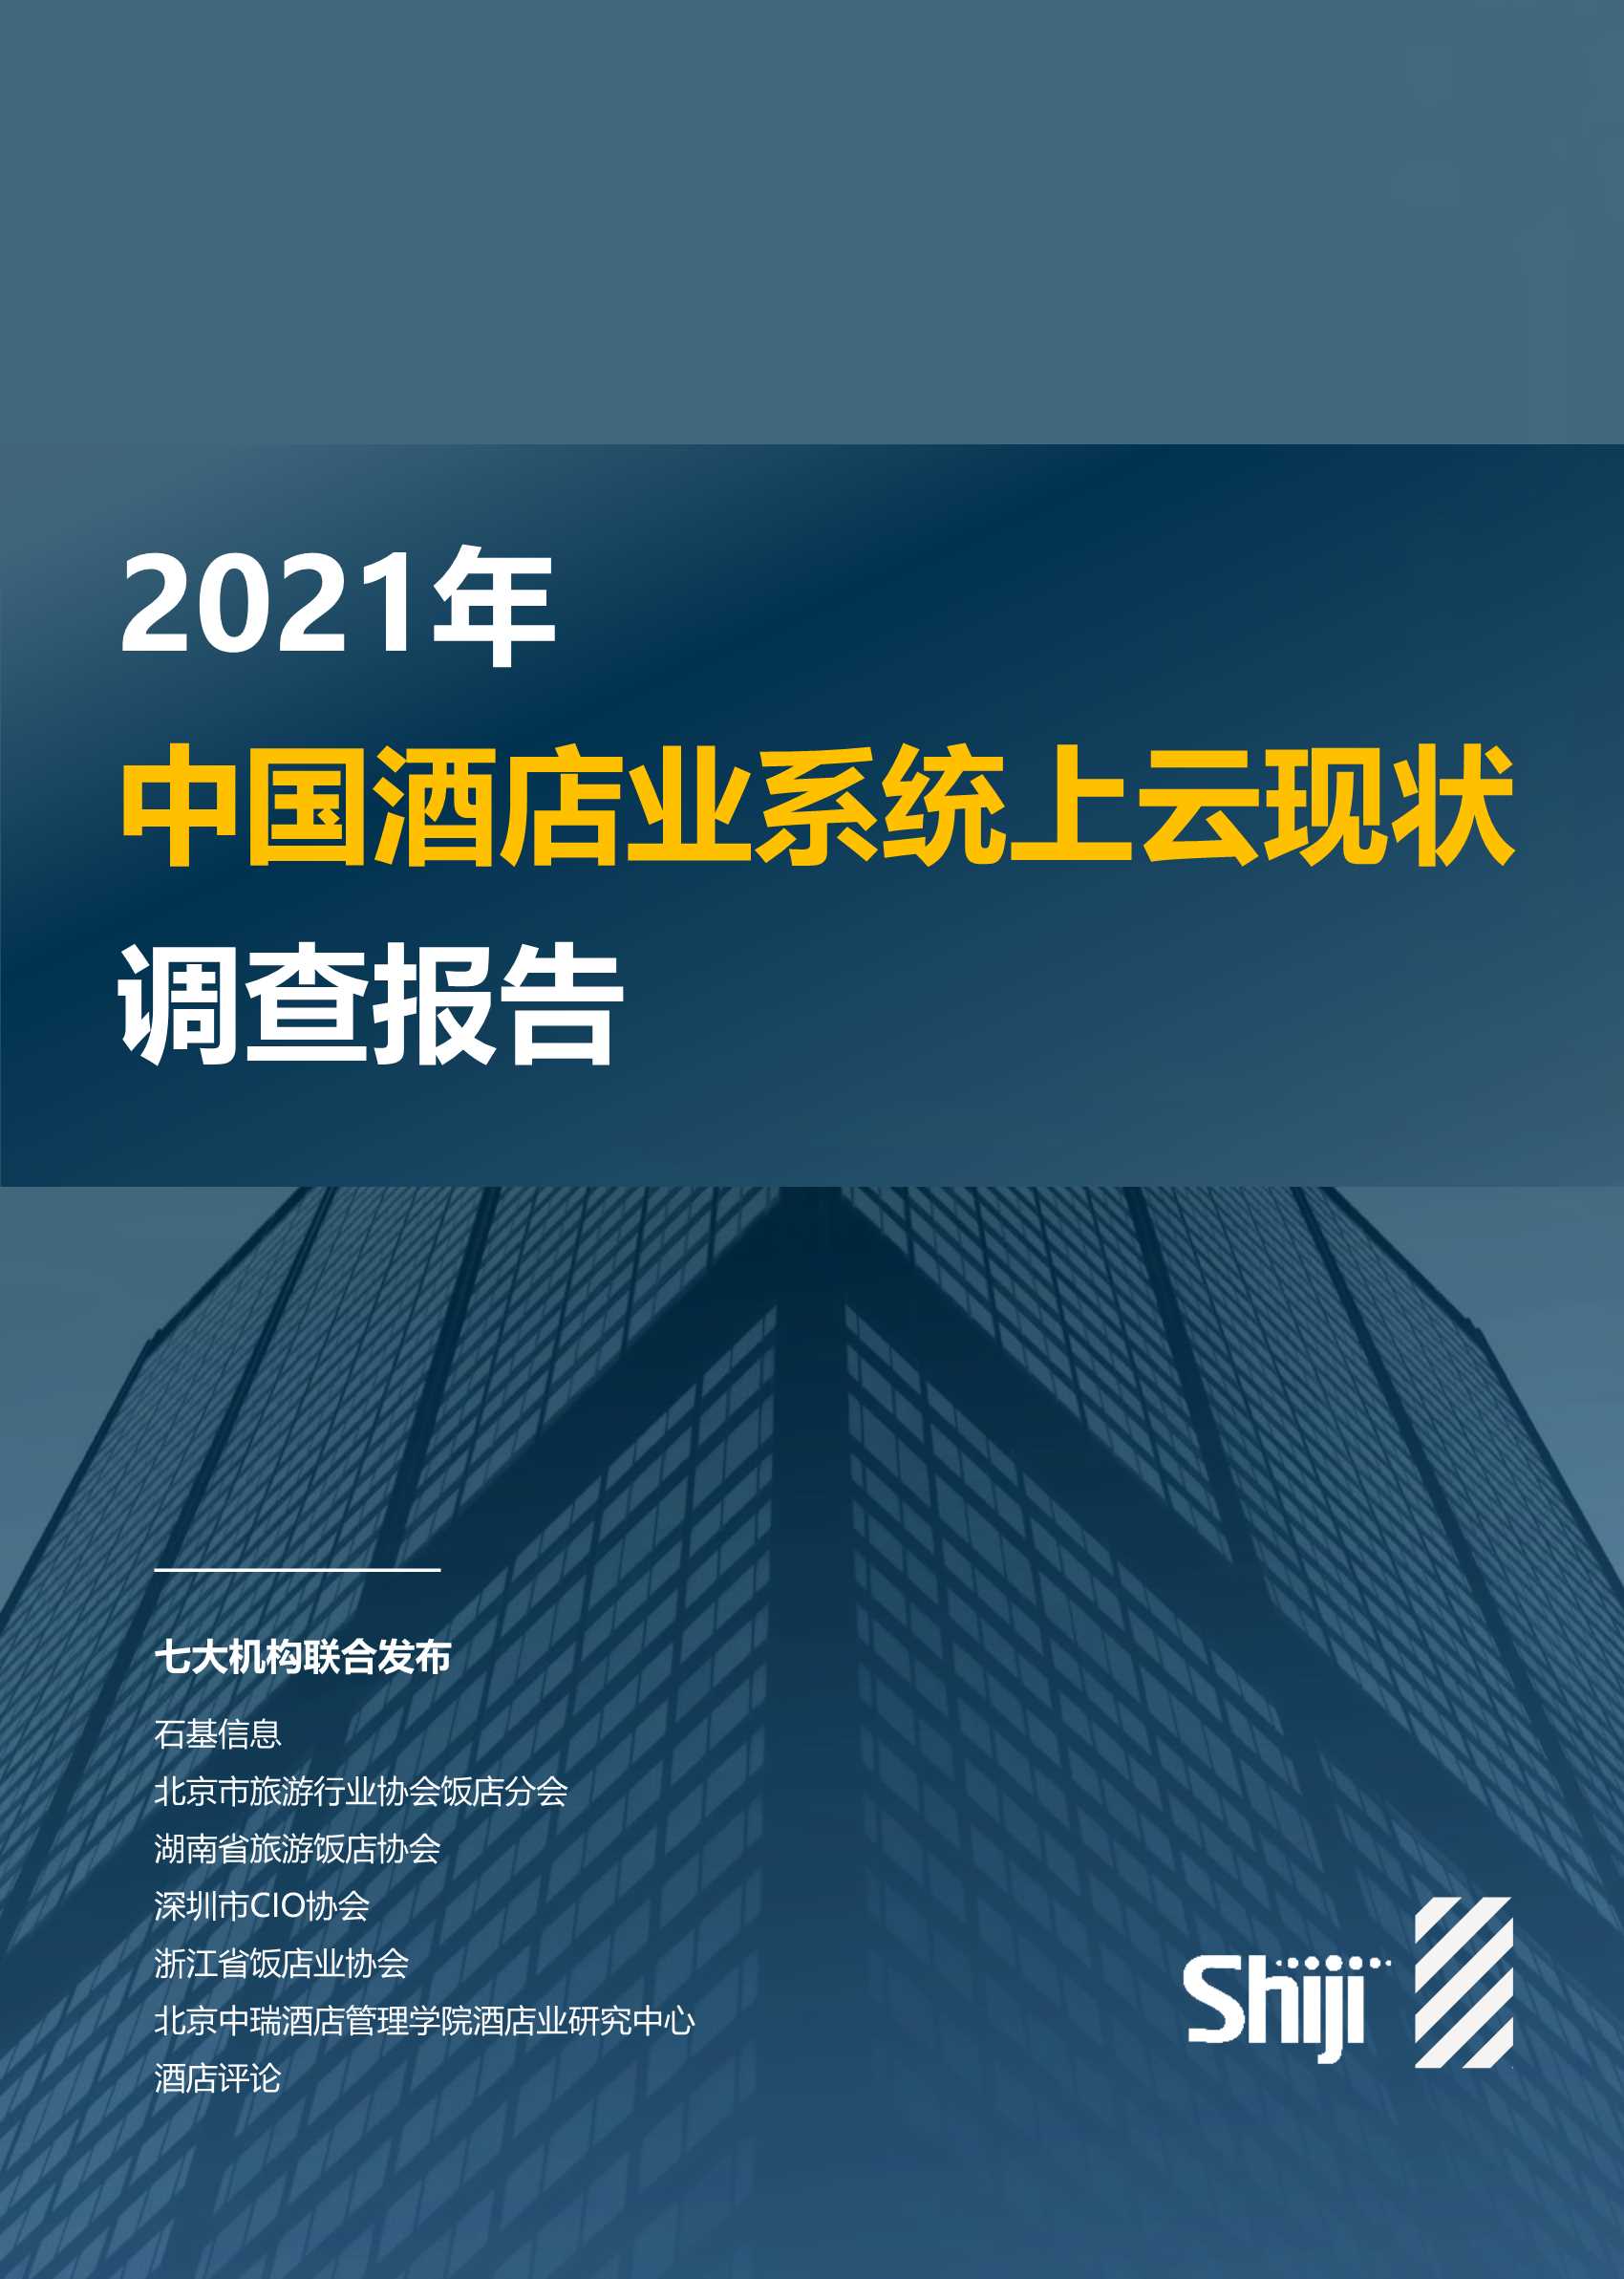 石基信息-2021年酒店业系统上云现状调查报告-2021.10-51页